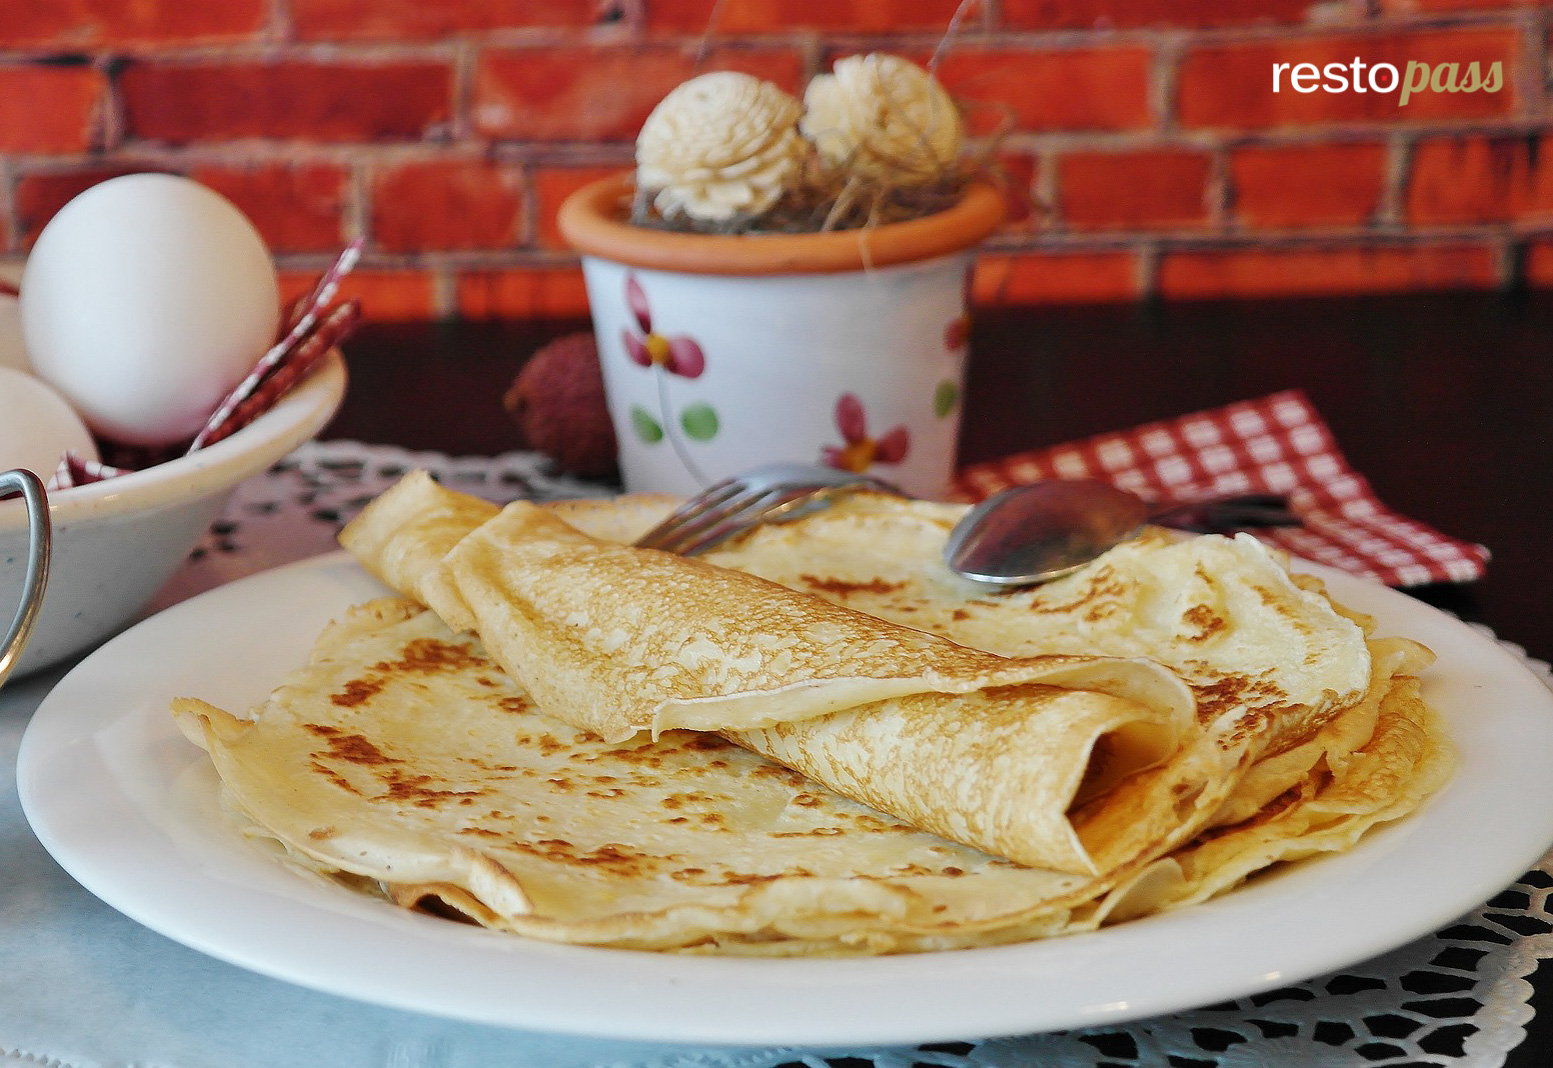 Ang Recipe Para sa Pancake Dough WALANG Oras ng Pahinga sa wakas ay inihayag!